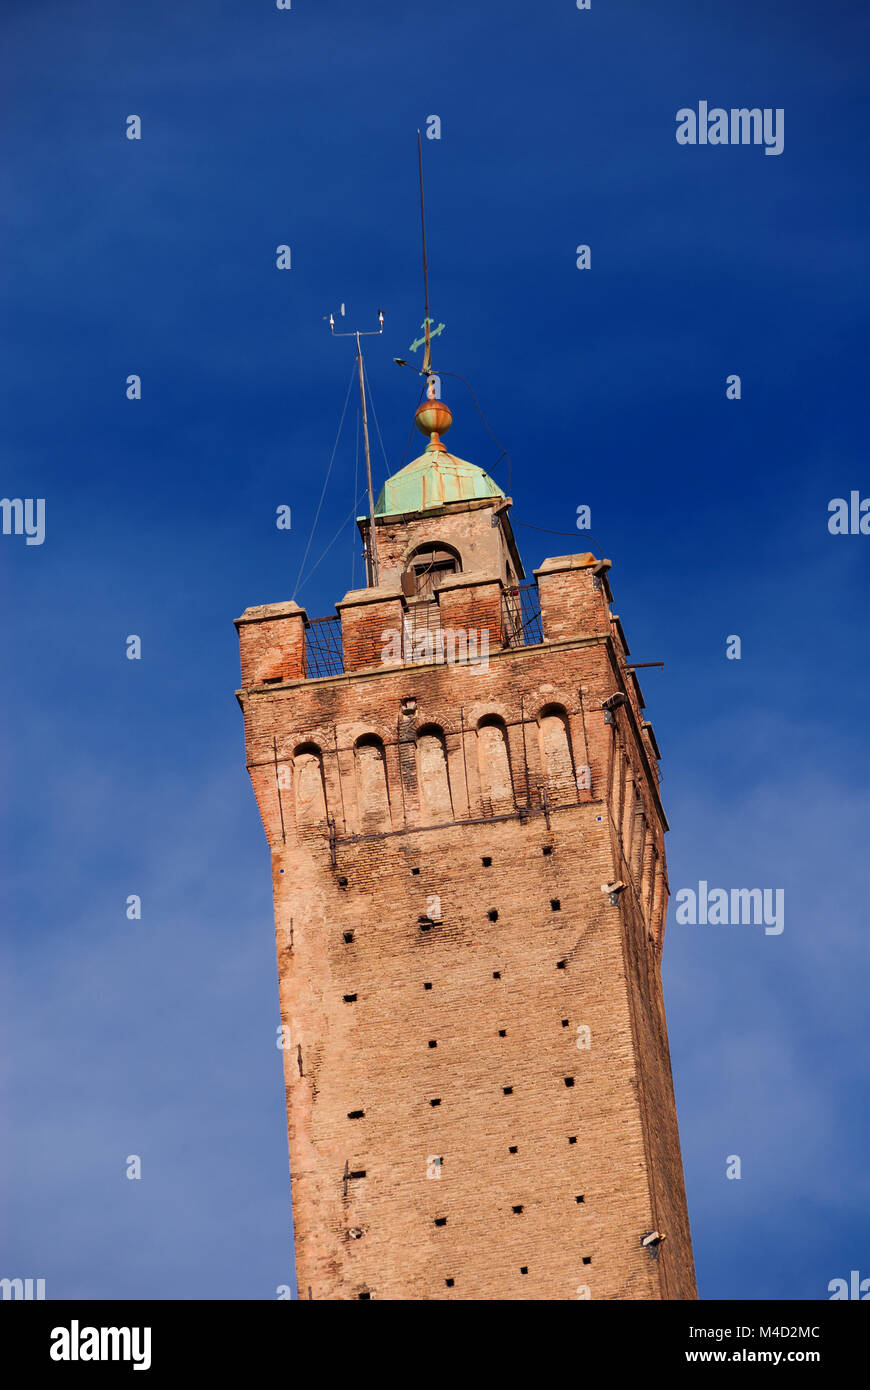 Dettaglio della parte superiore della medievale Torre degli Asinelli, la piu' alta torre in Bologna e il simbolo della città, eretto alla fine del XII secolo Foto Stock